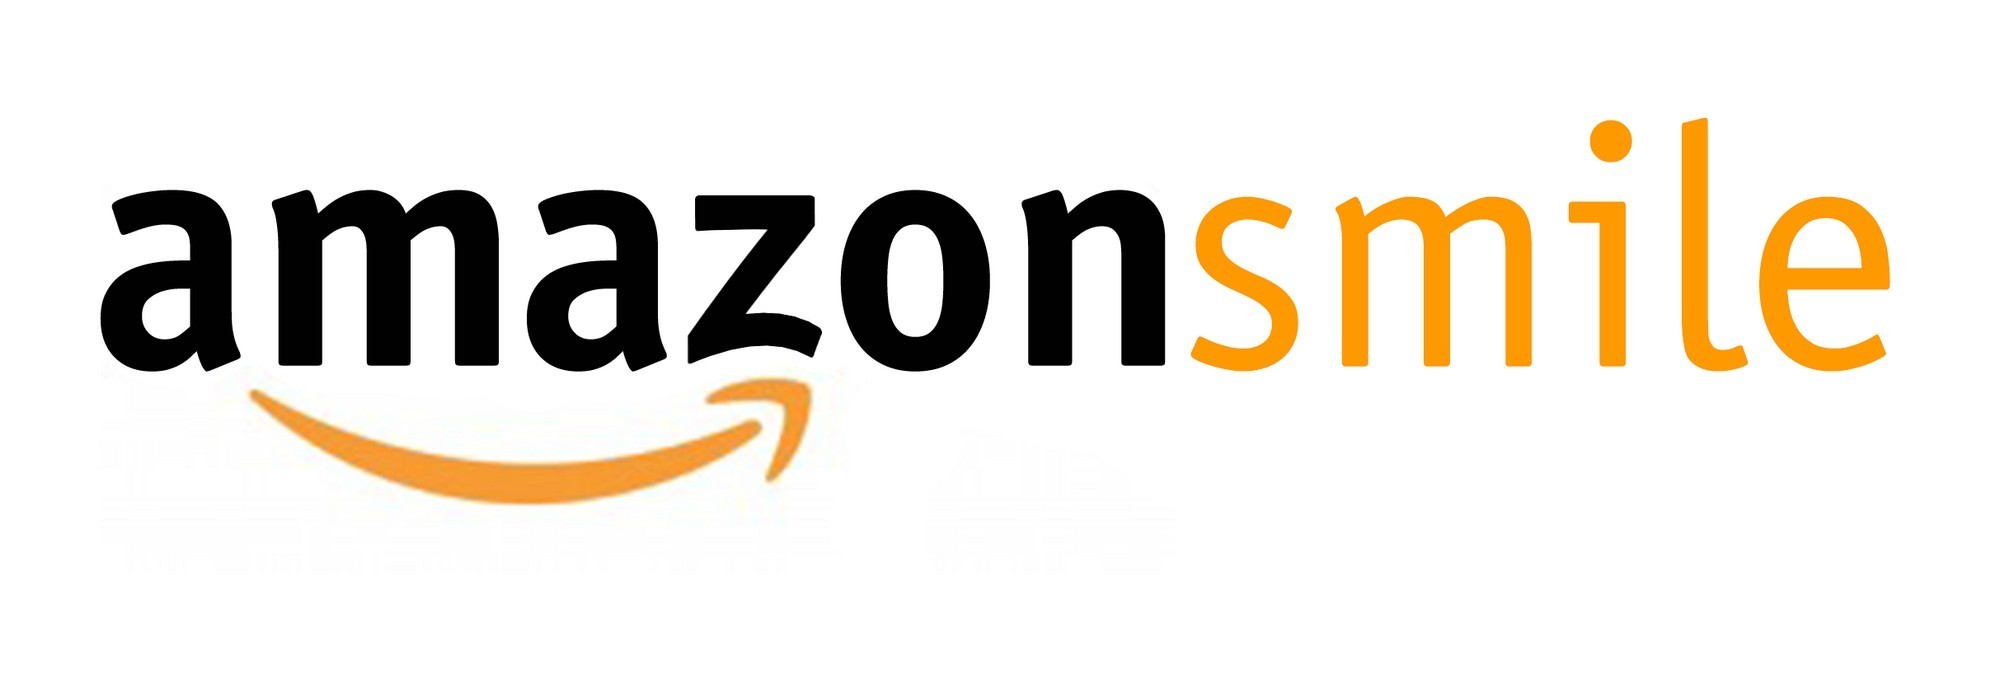 Amazon Smile Logo Rise